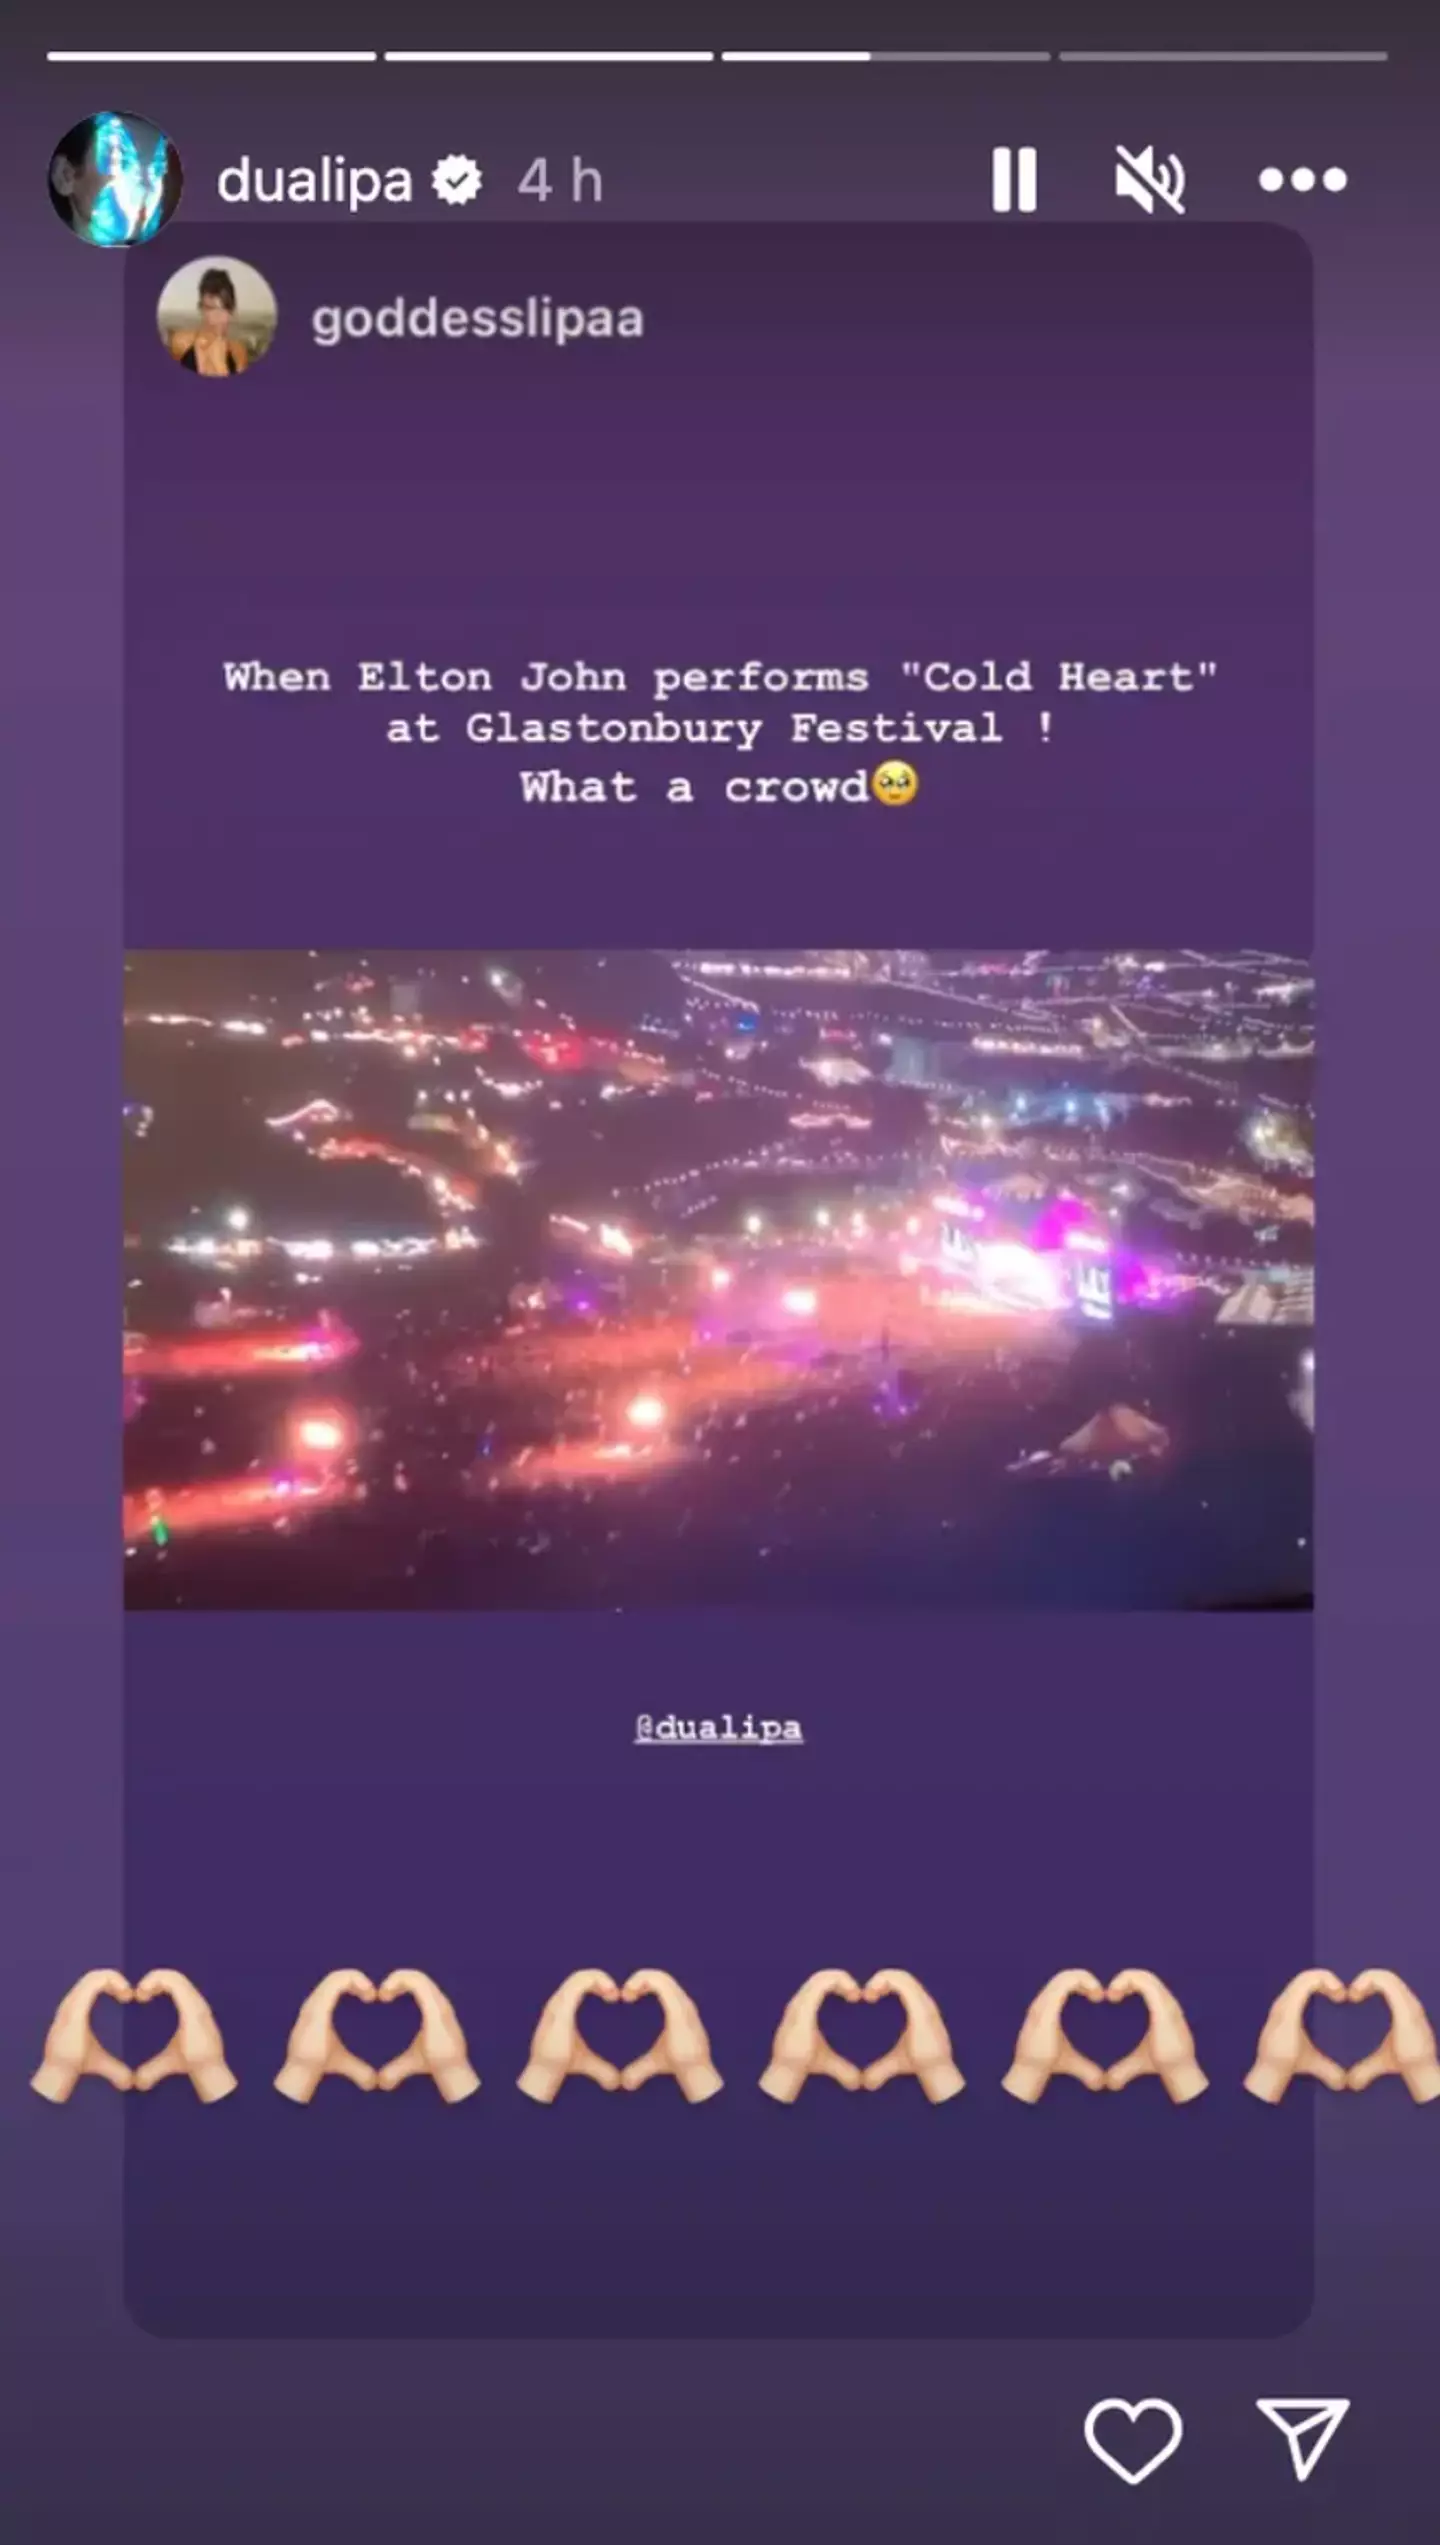 Dua Lipa showed love to Elton John on Instagram.